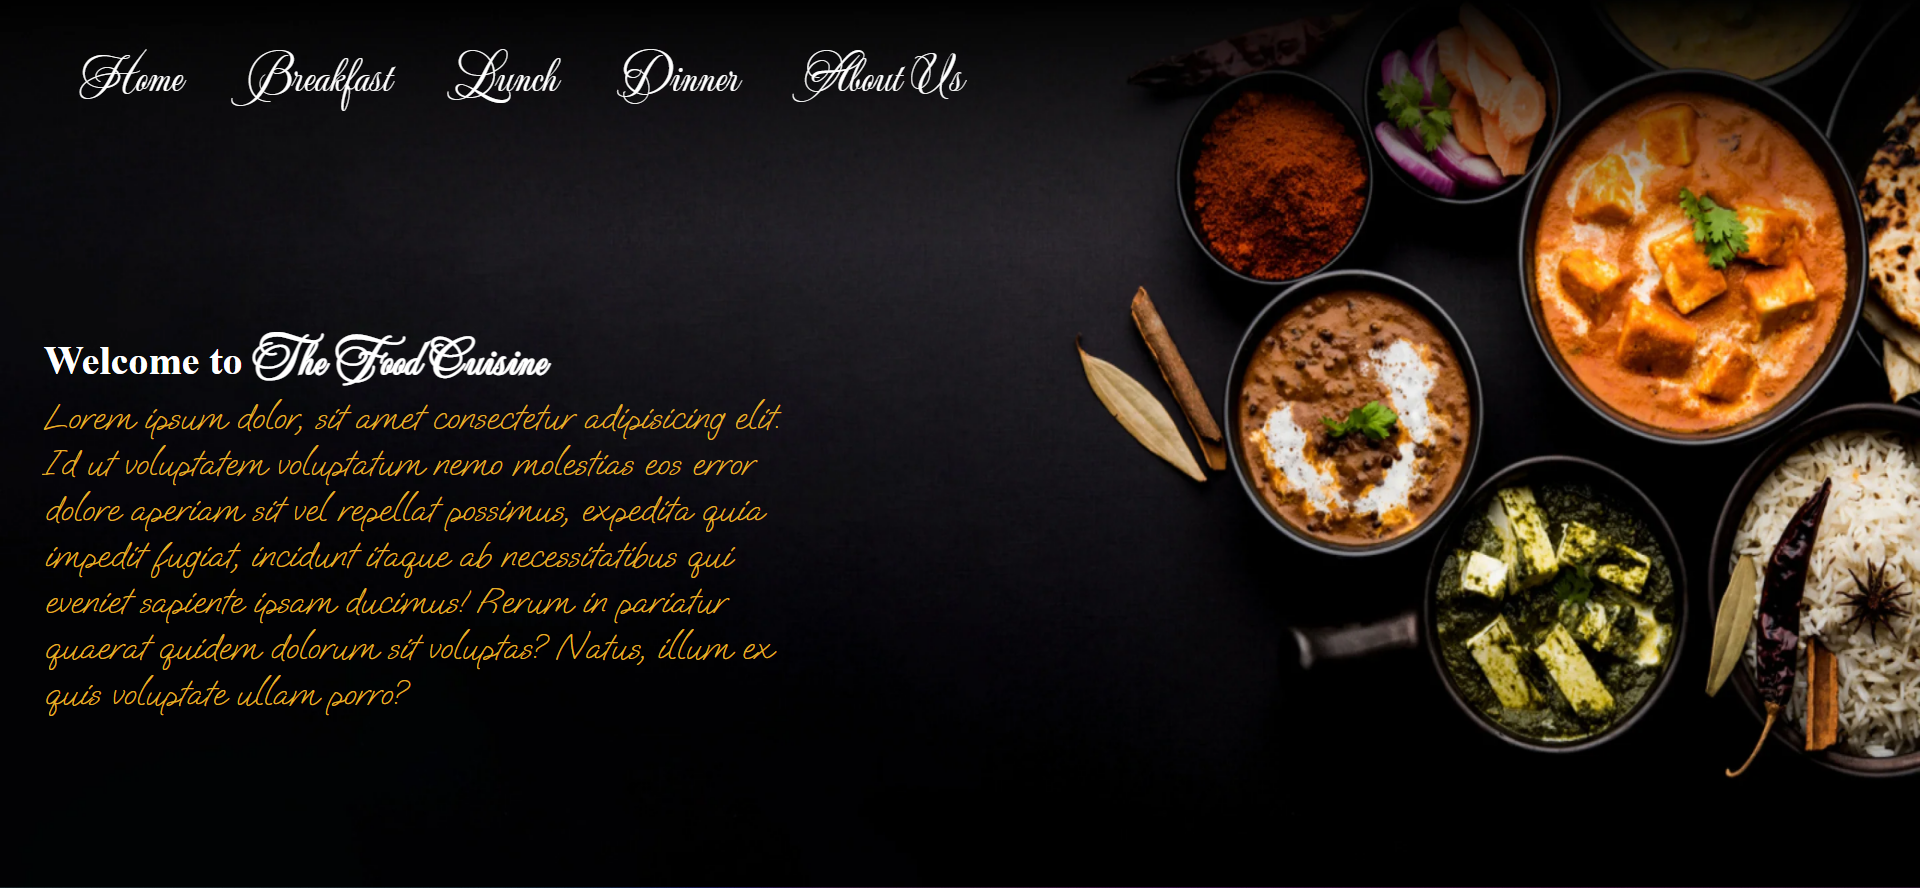 The Food Cuisine - Online Food Ordering Website